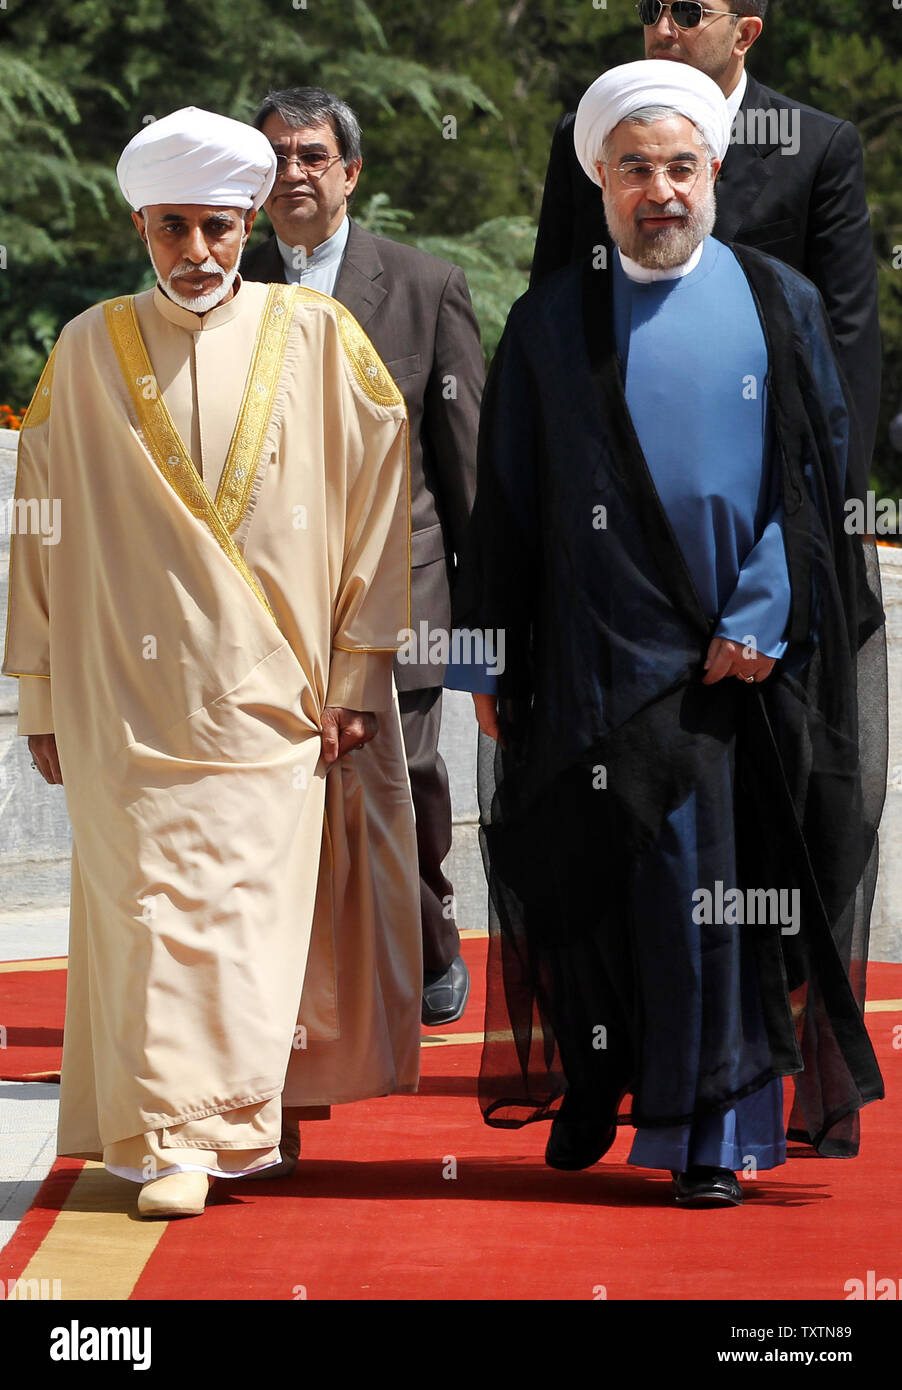 Le Sultan Qaboos bin Sa'id id (L) accueilli par le président iranien Hassan Rohani au palais présidentiel à Téhéran, Iran, le 25 août 2013.Le monarque omanais est le premier chef d'État à visiter Téhéran depuis Rohani a pris ses fonctions le 4 août. Maryam Rahmanian/UPI Banque D'Images